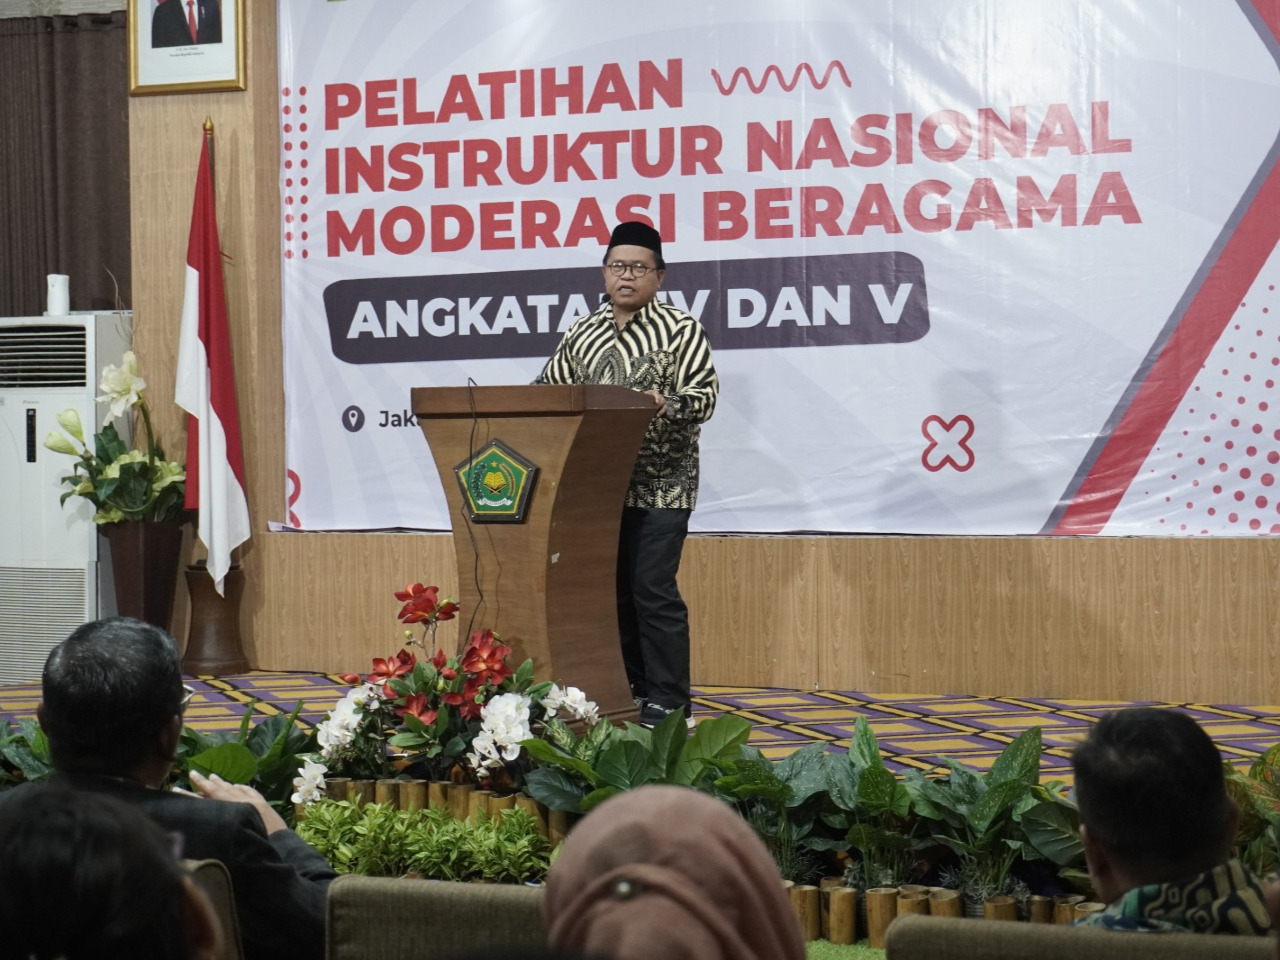 Moderasi Beragama, Panggilan Kemanusiaan untuk Indonesia yang Plural